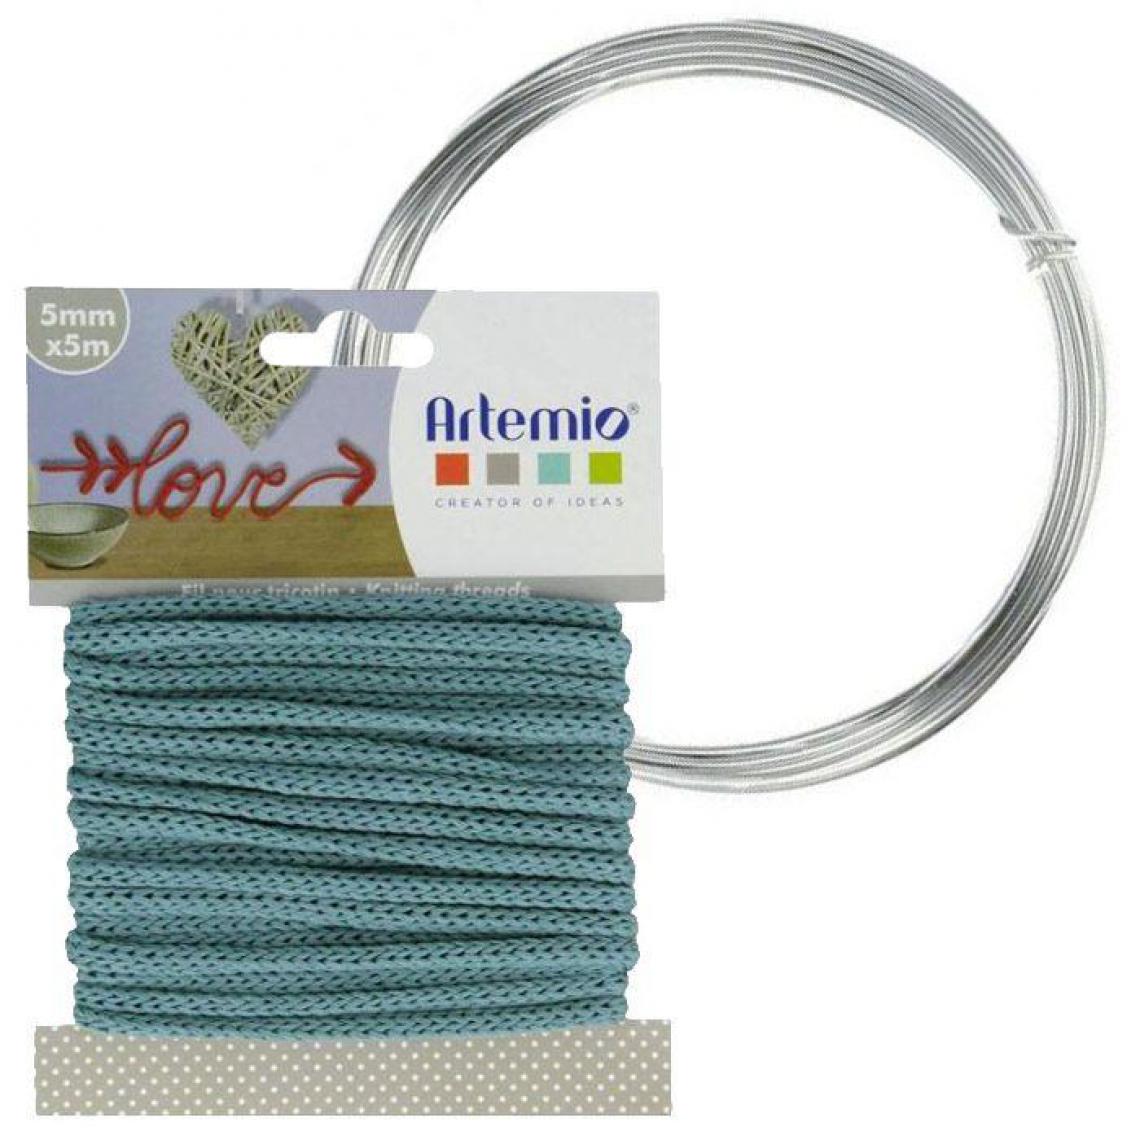 Artemio - Fil à tricotin bleu turquoise 5 mm x 5 m + fil d'aluminium - Dessin et peinture